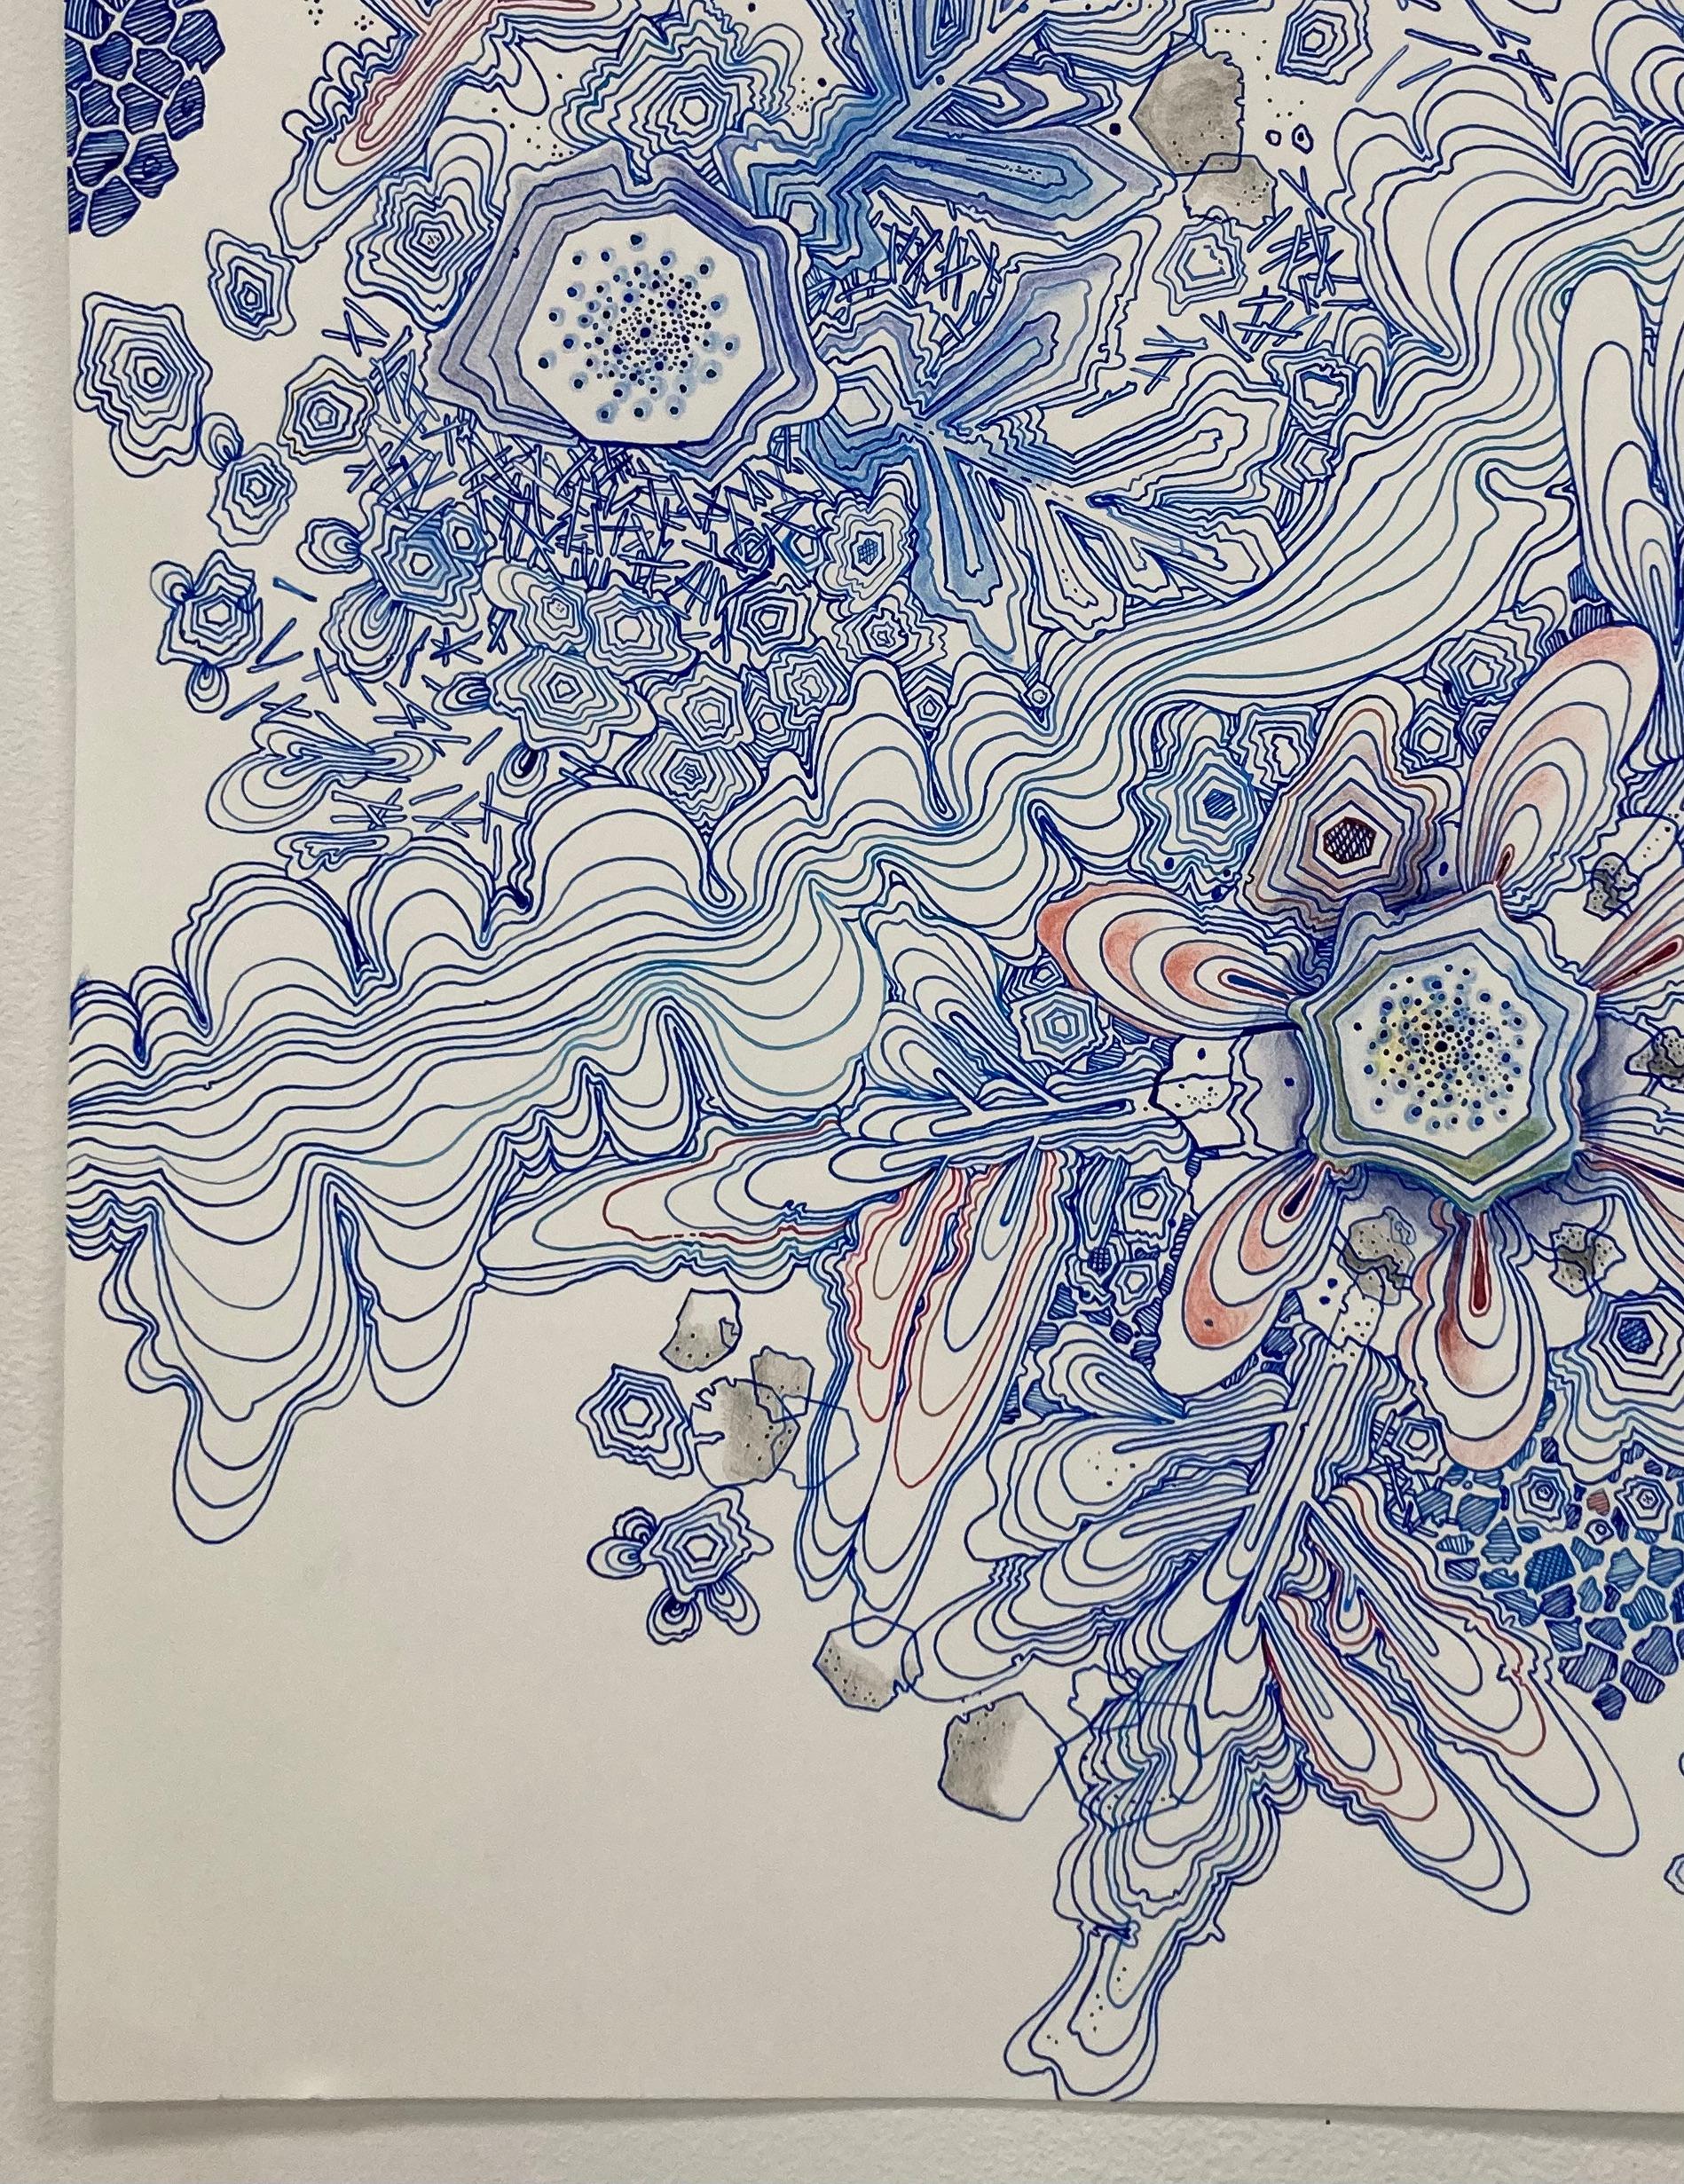 River, Indigo Blue, Navy, Cobalt, Salmon Pink, Red Snowflake Pattern Drawing - Art by Sarah Morejohn